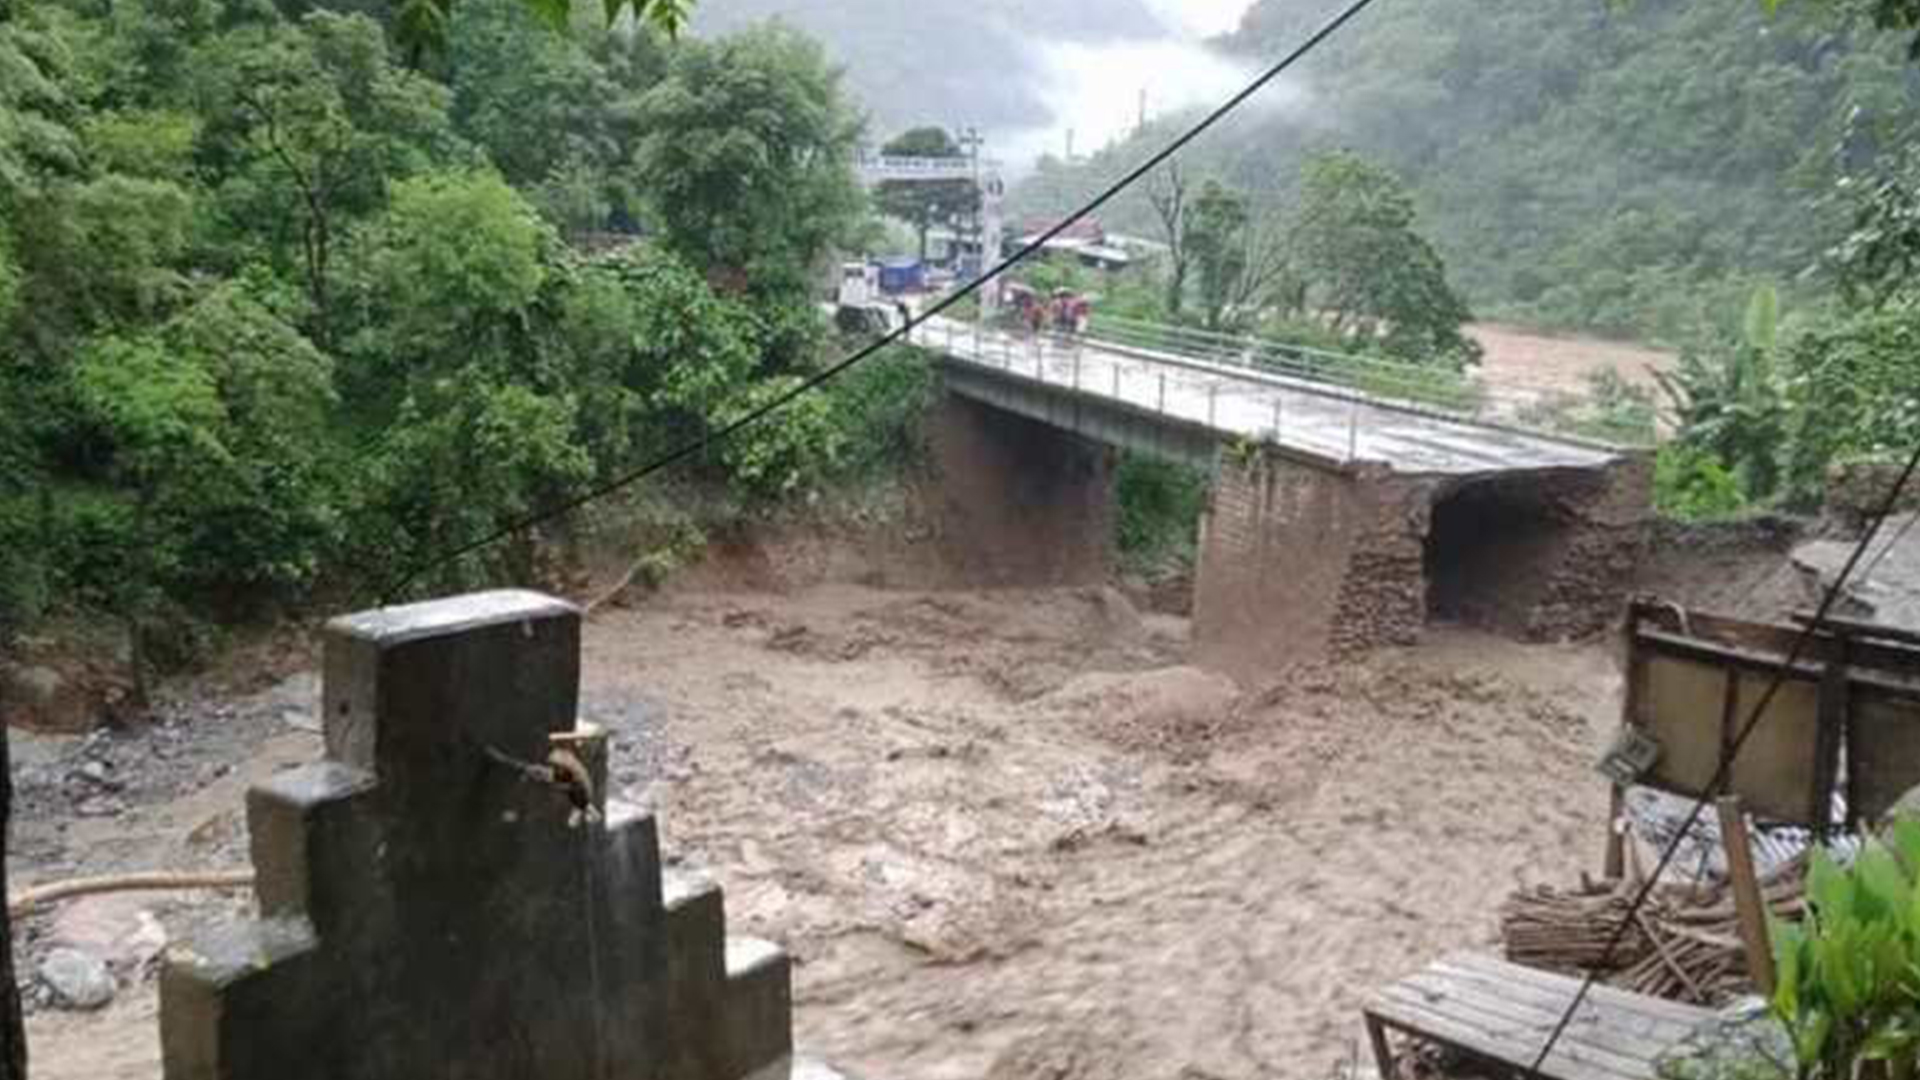 Damaged Bridge at Chitwan-Dhading Being Repaired